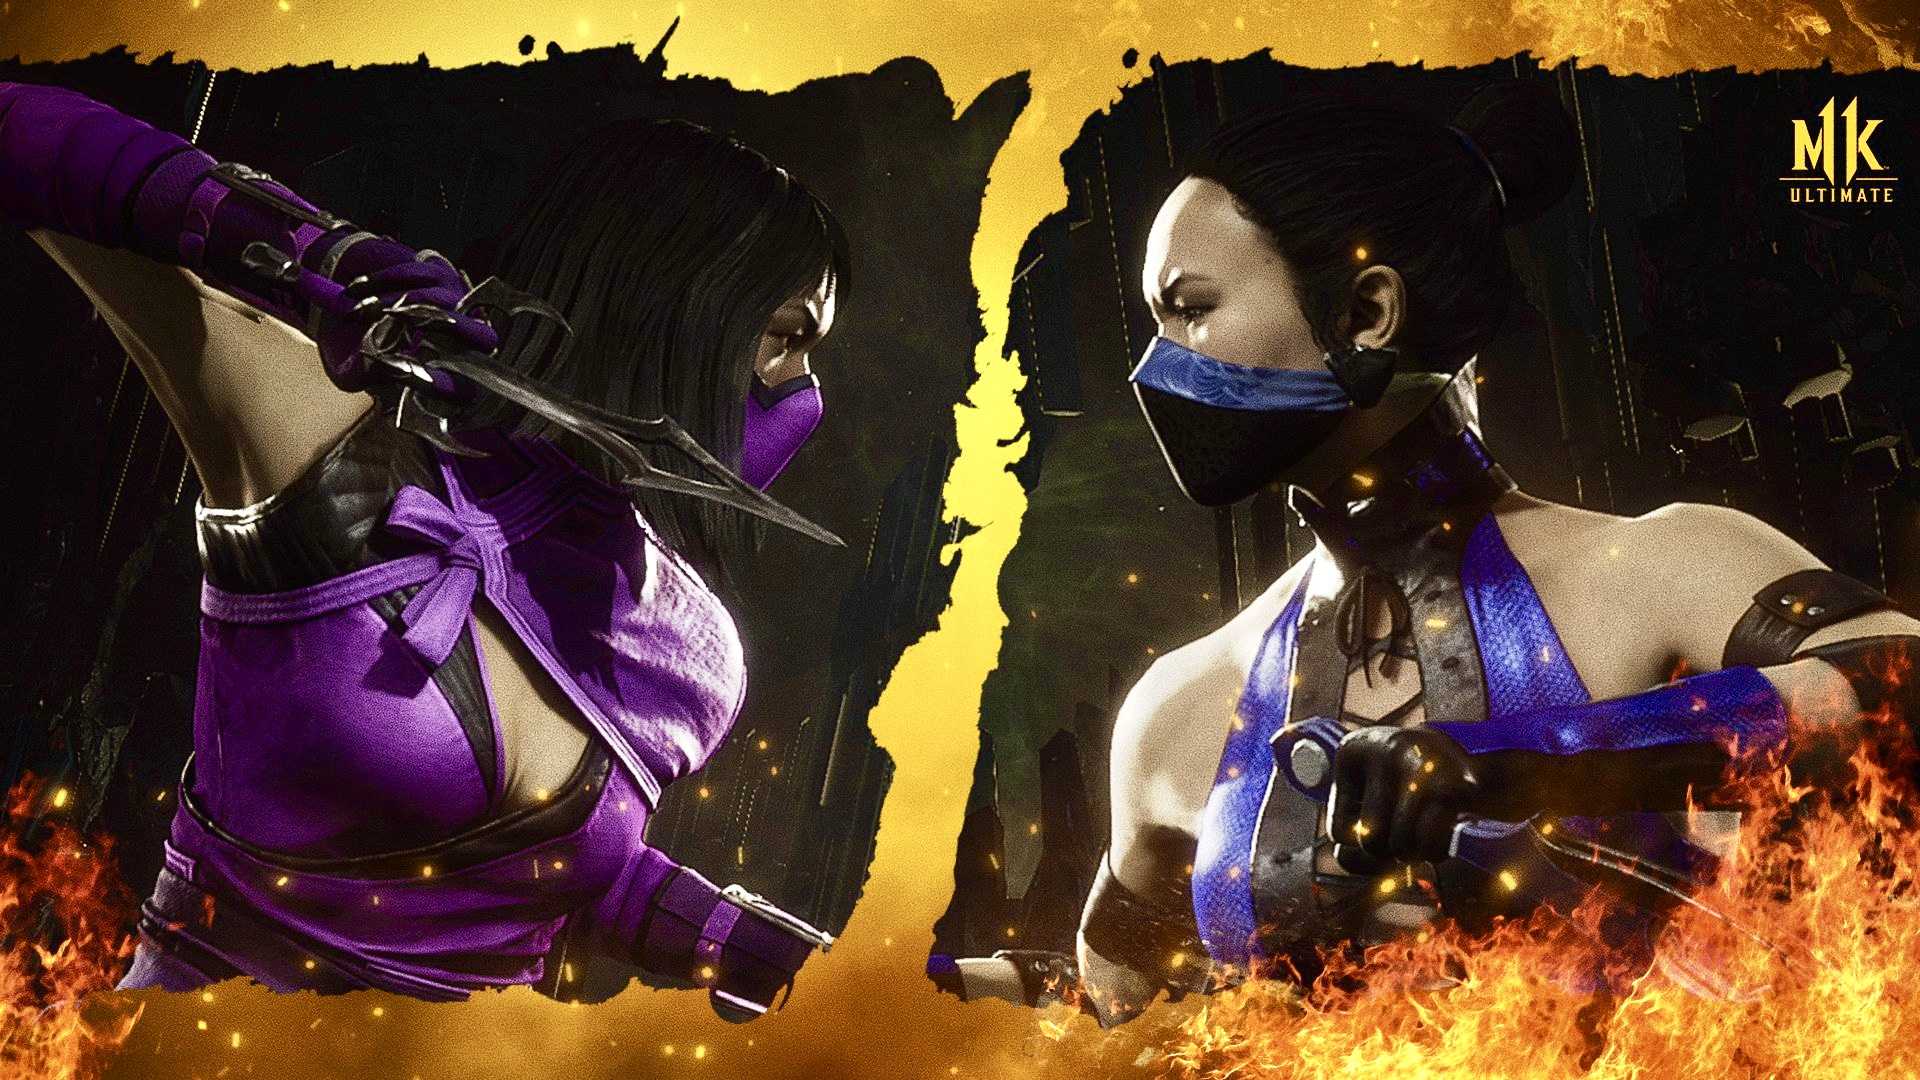 Mortal kombat x updates steam фото 111